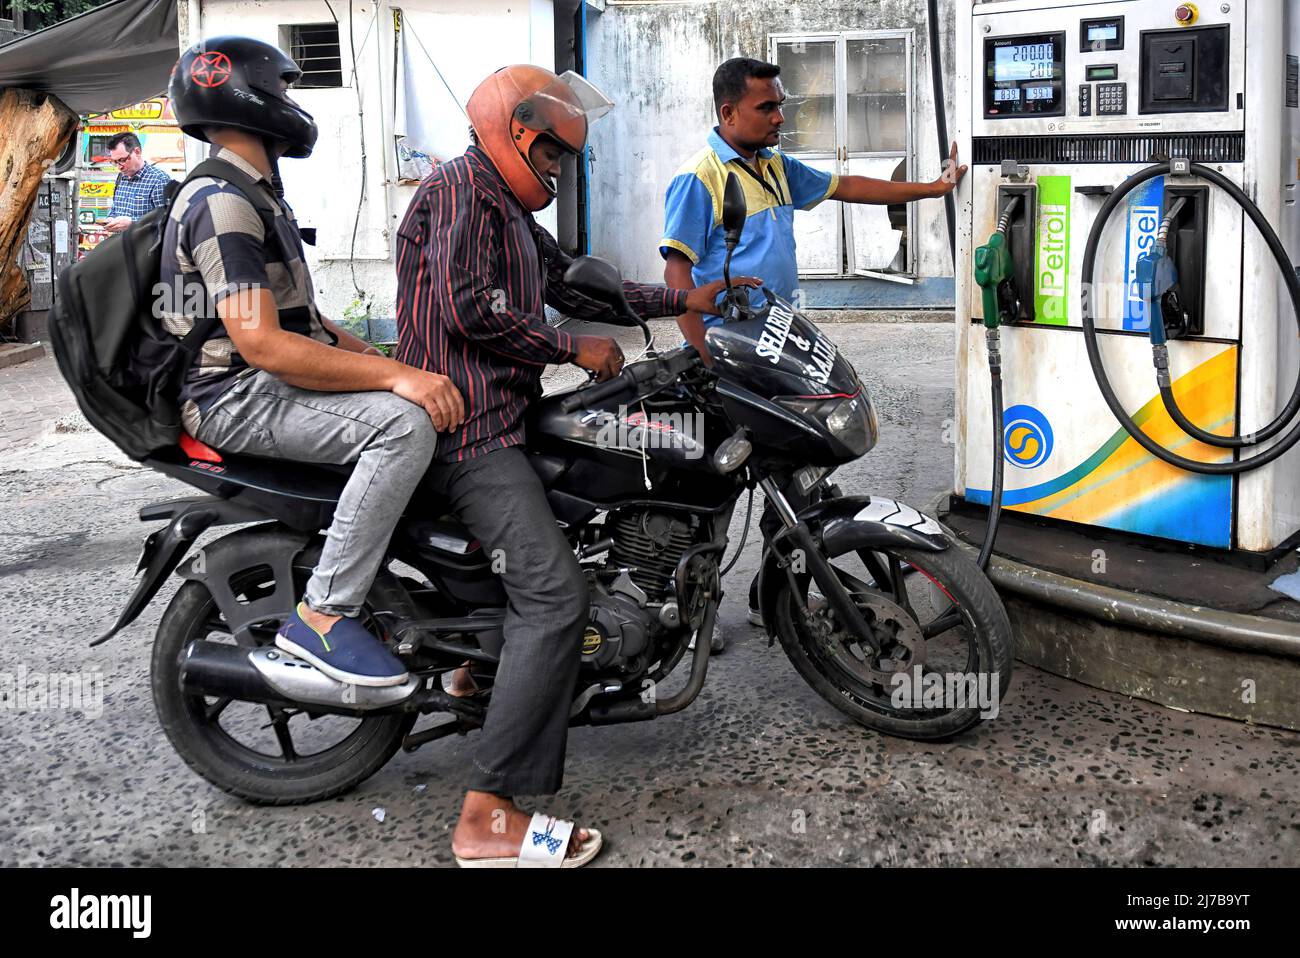 Les gens ont vu remplir leur moto à une pompe à essence. Les prix de  l'essence et du diesel augmentent continuellement en Inde, ce qui a un  impact sur la guerre entre